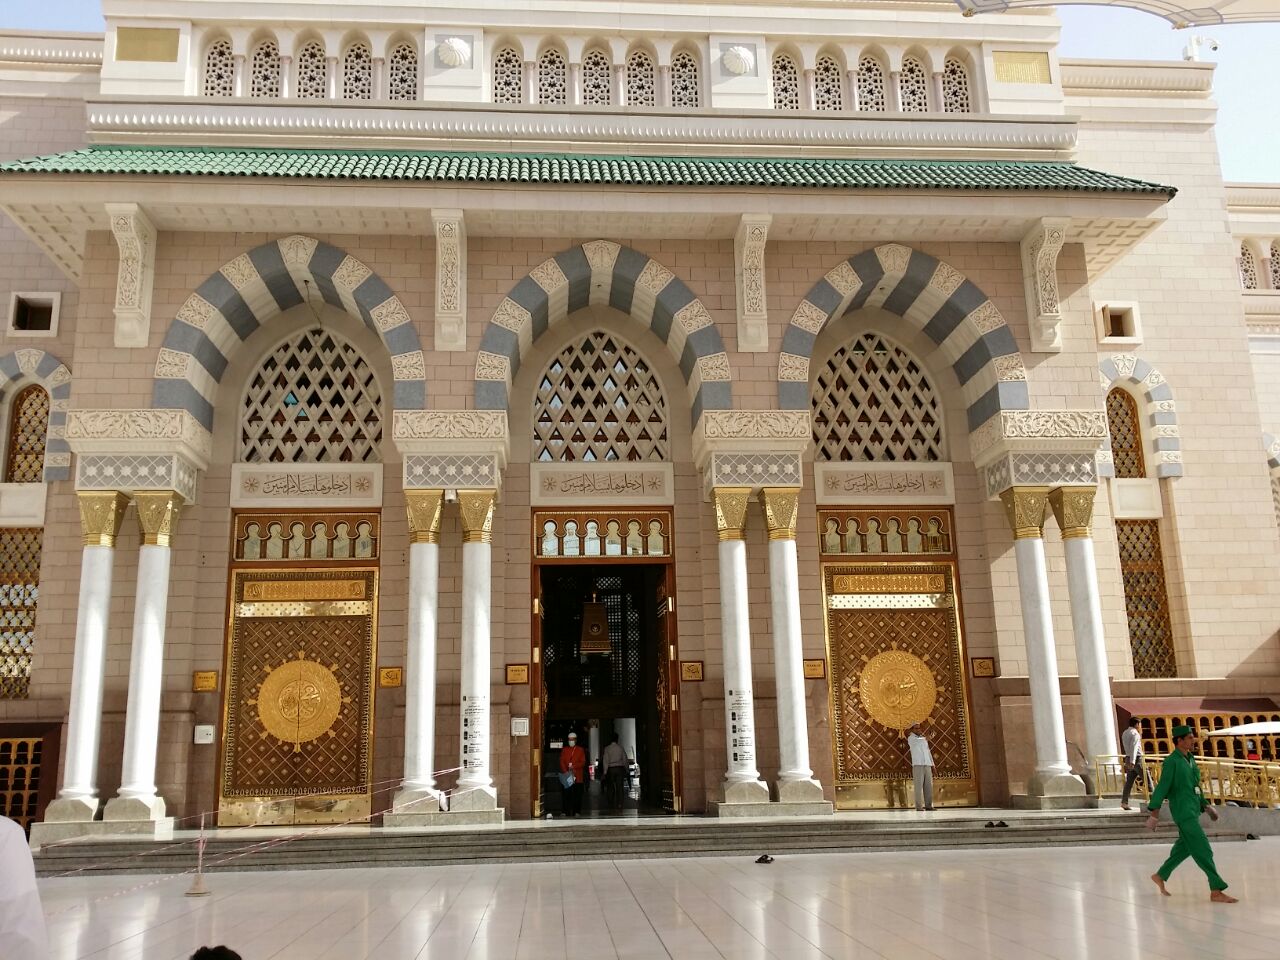 Dr Shafie Abu Bakar Dekorasi  Tiang Seri Masjid  Al Umm 